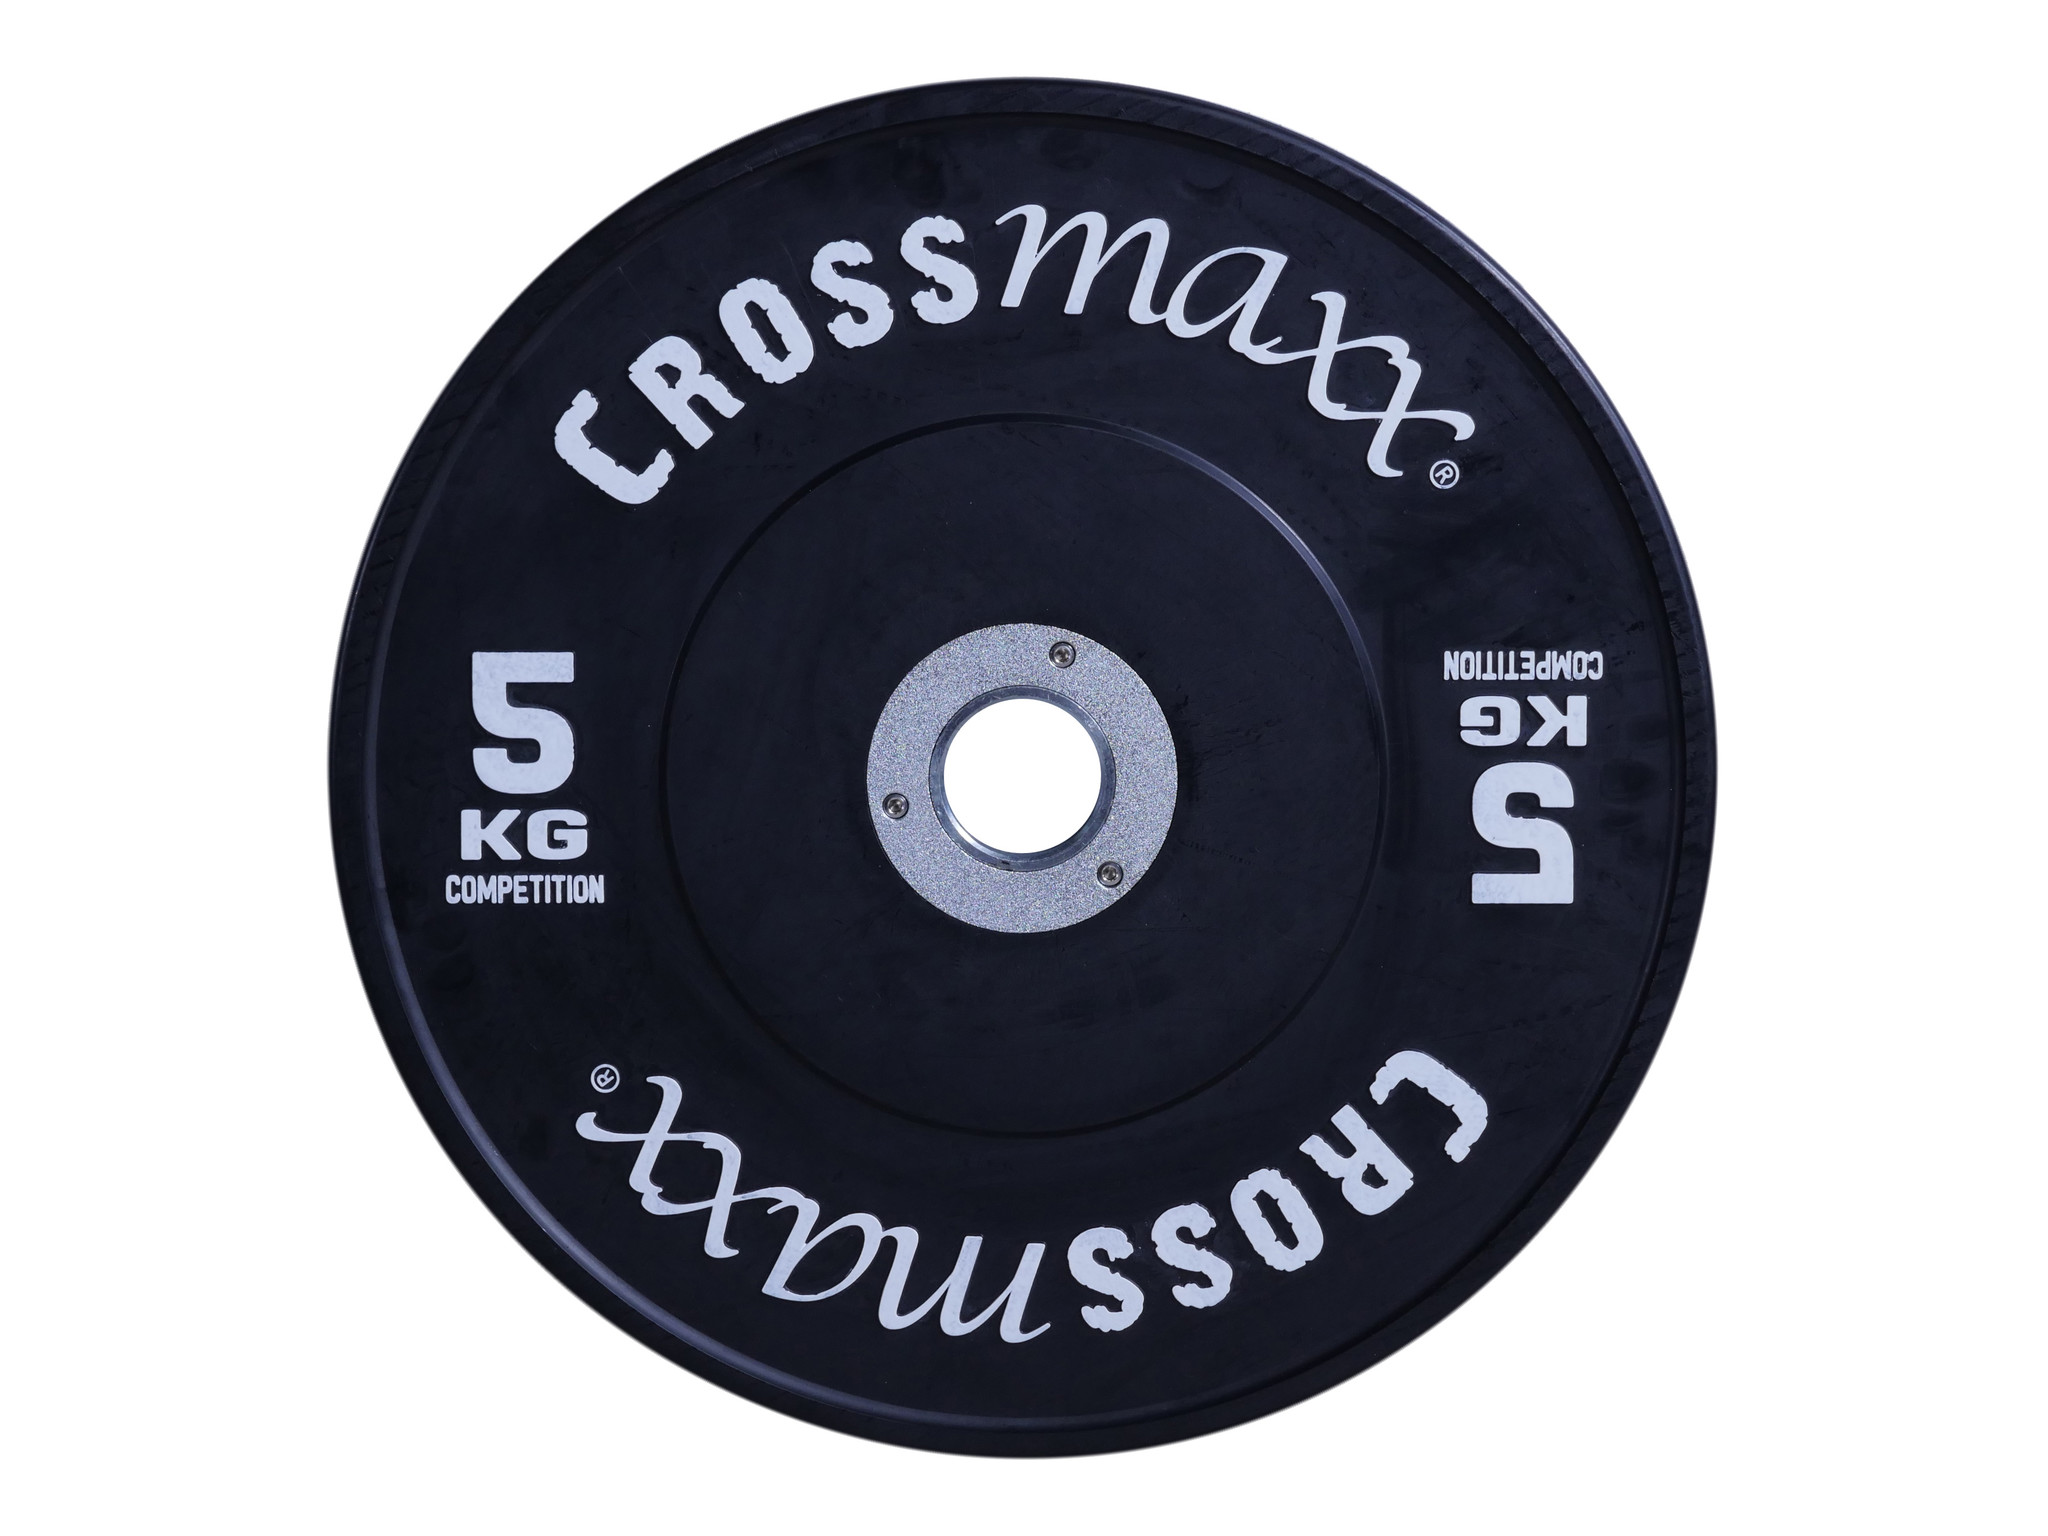 Brug Crossmaxx Competition Bumper Plate 5 kg Black til en forbedret oplevelse